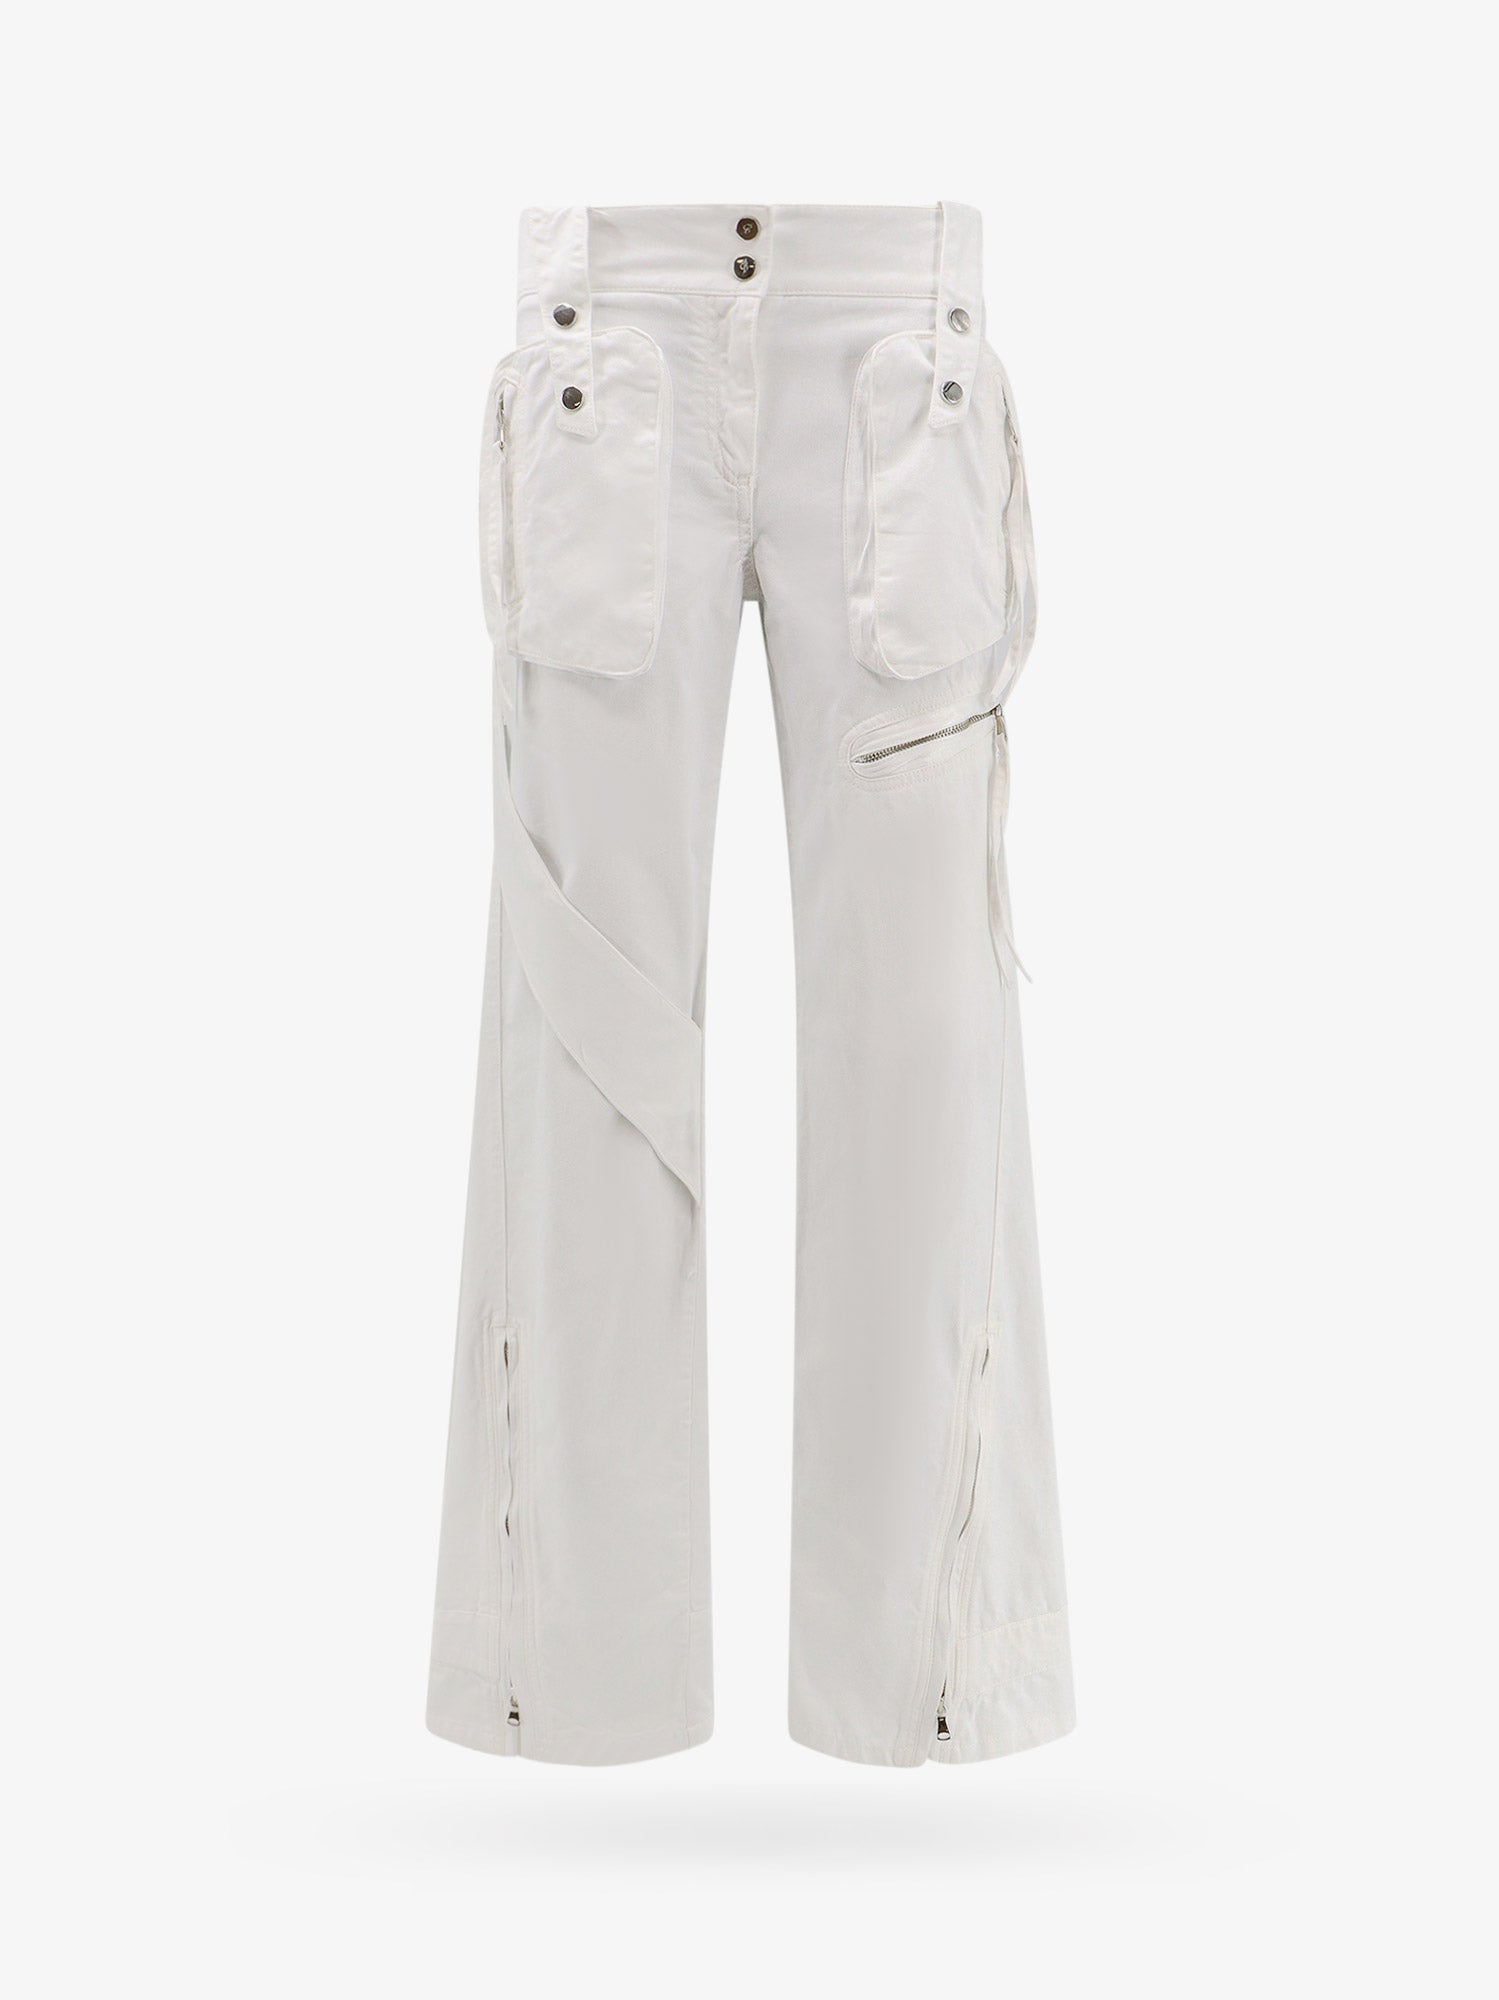 Shop Blumarine Woman Trouser Woman White Pants